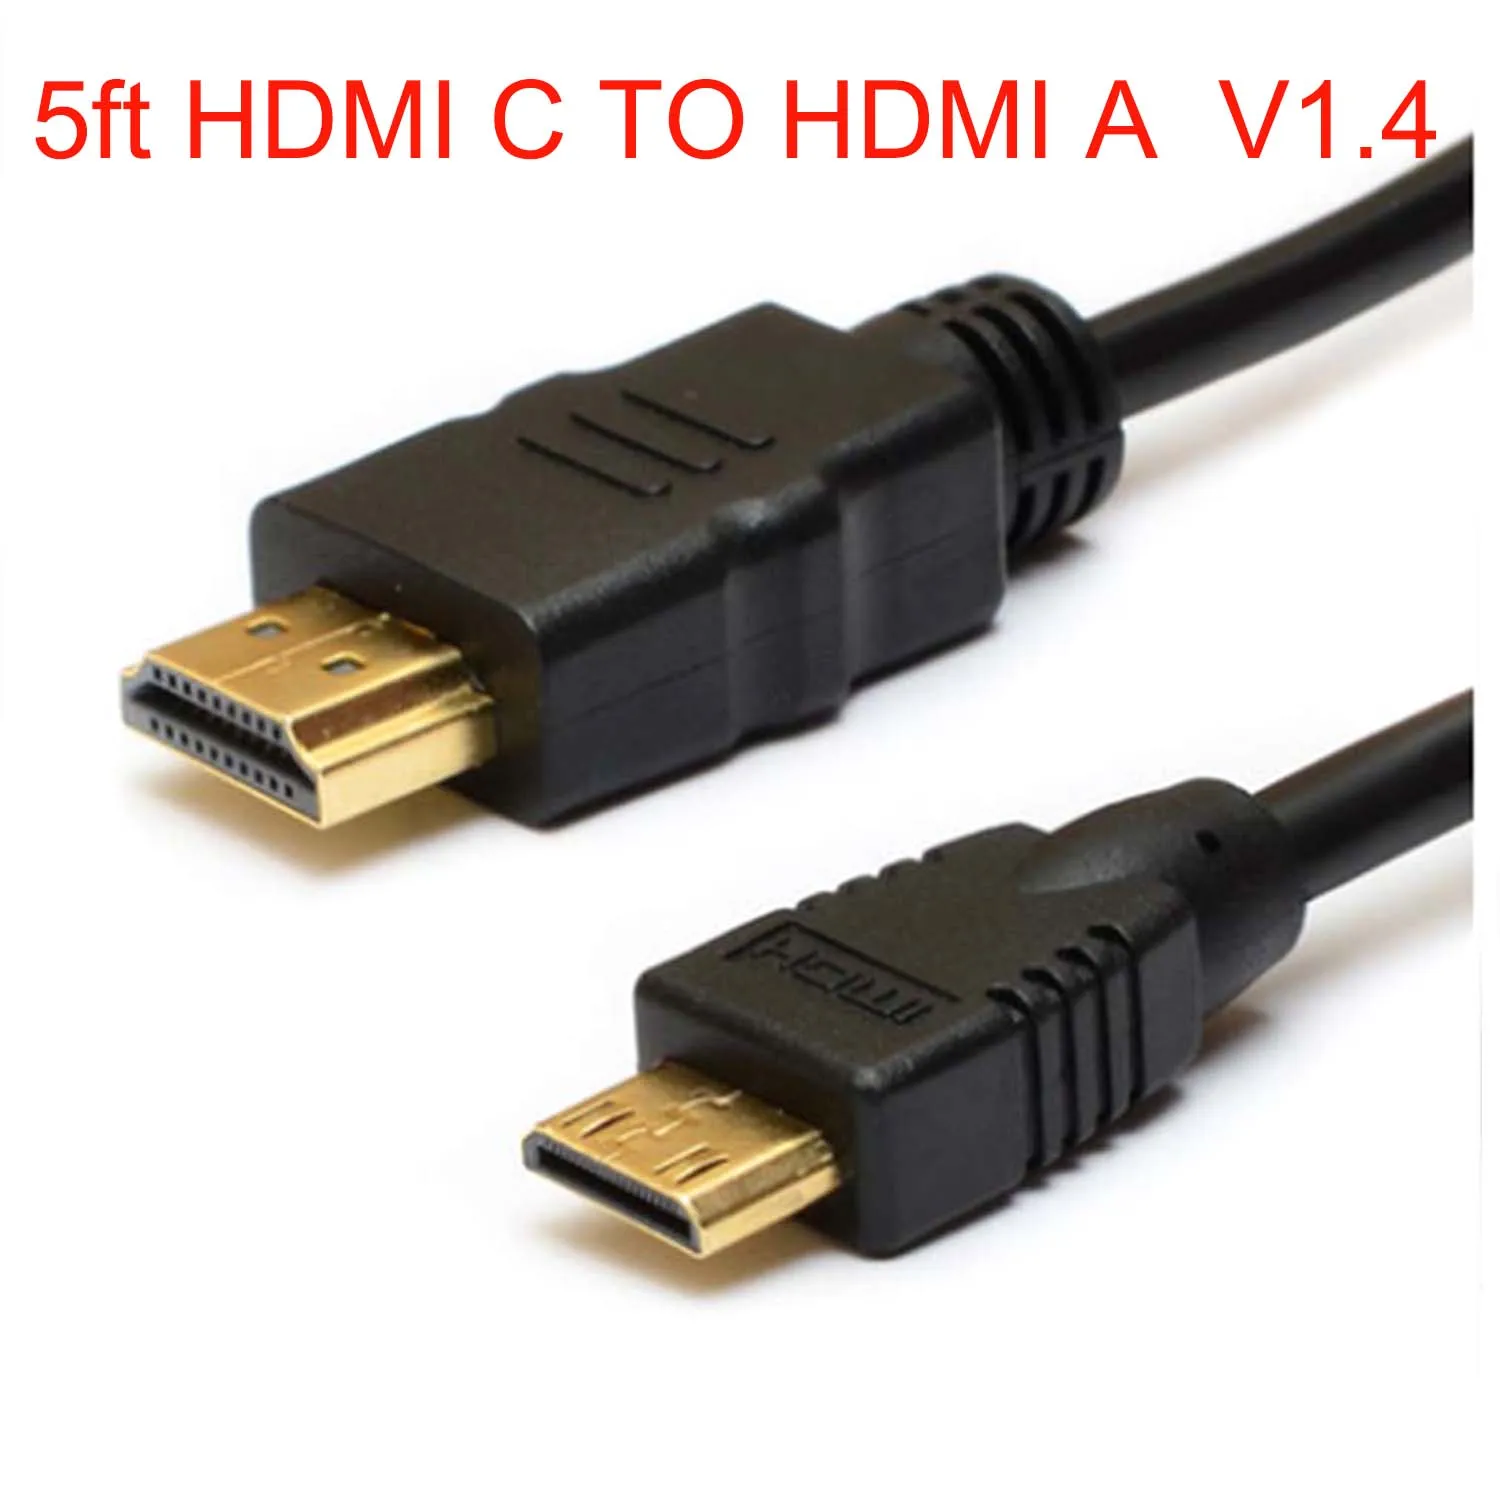 5 футов мини HDMI-совместимый C папа к штекер v1.4 HD видео кабель для RCA DAA730R DDA730R